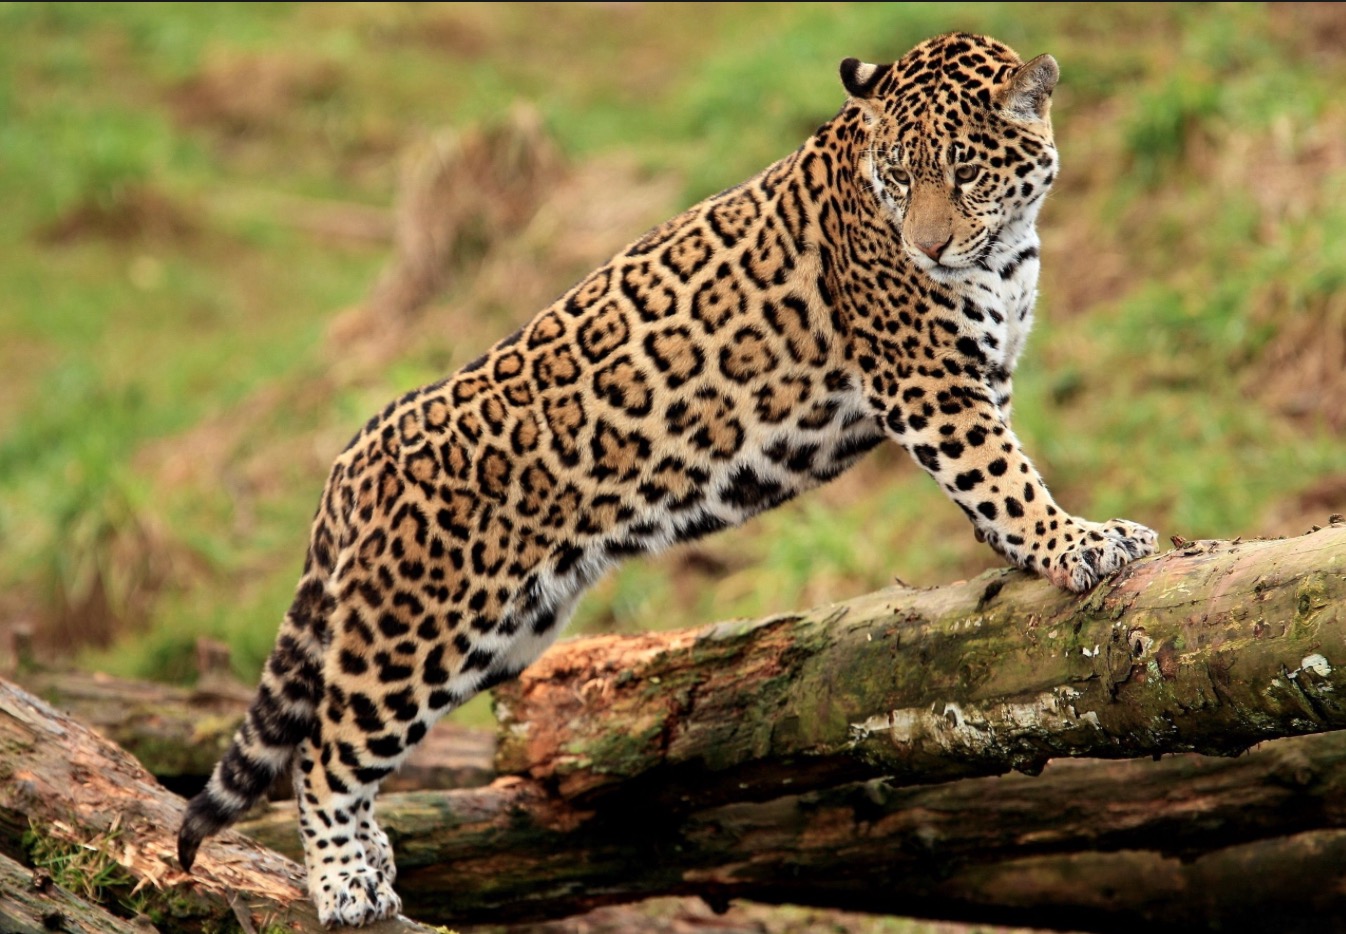 40-Panthera onca.JPEG